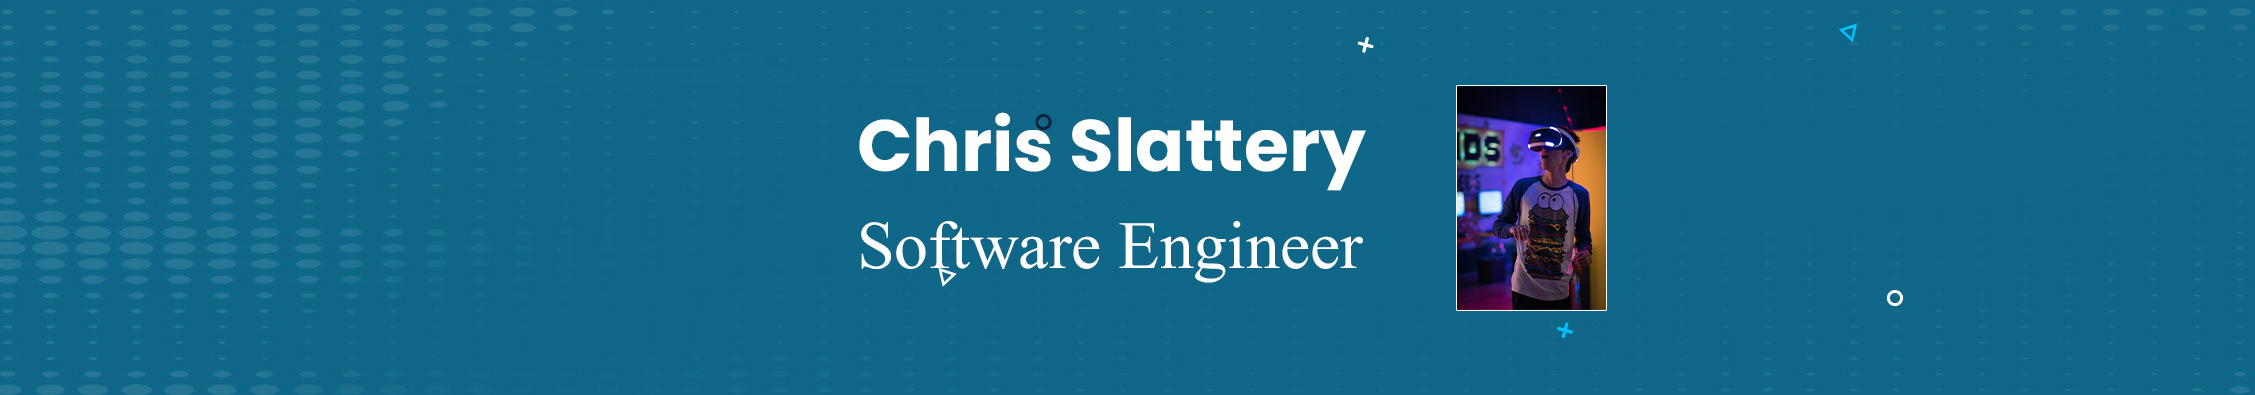 Chris Slattery のプロファイルバナー